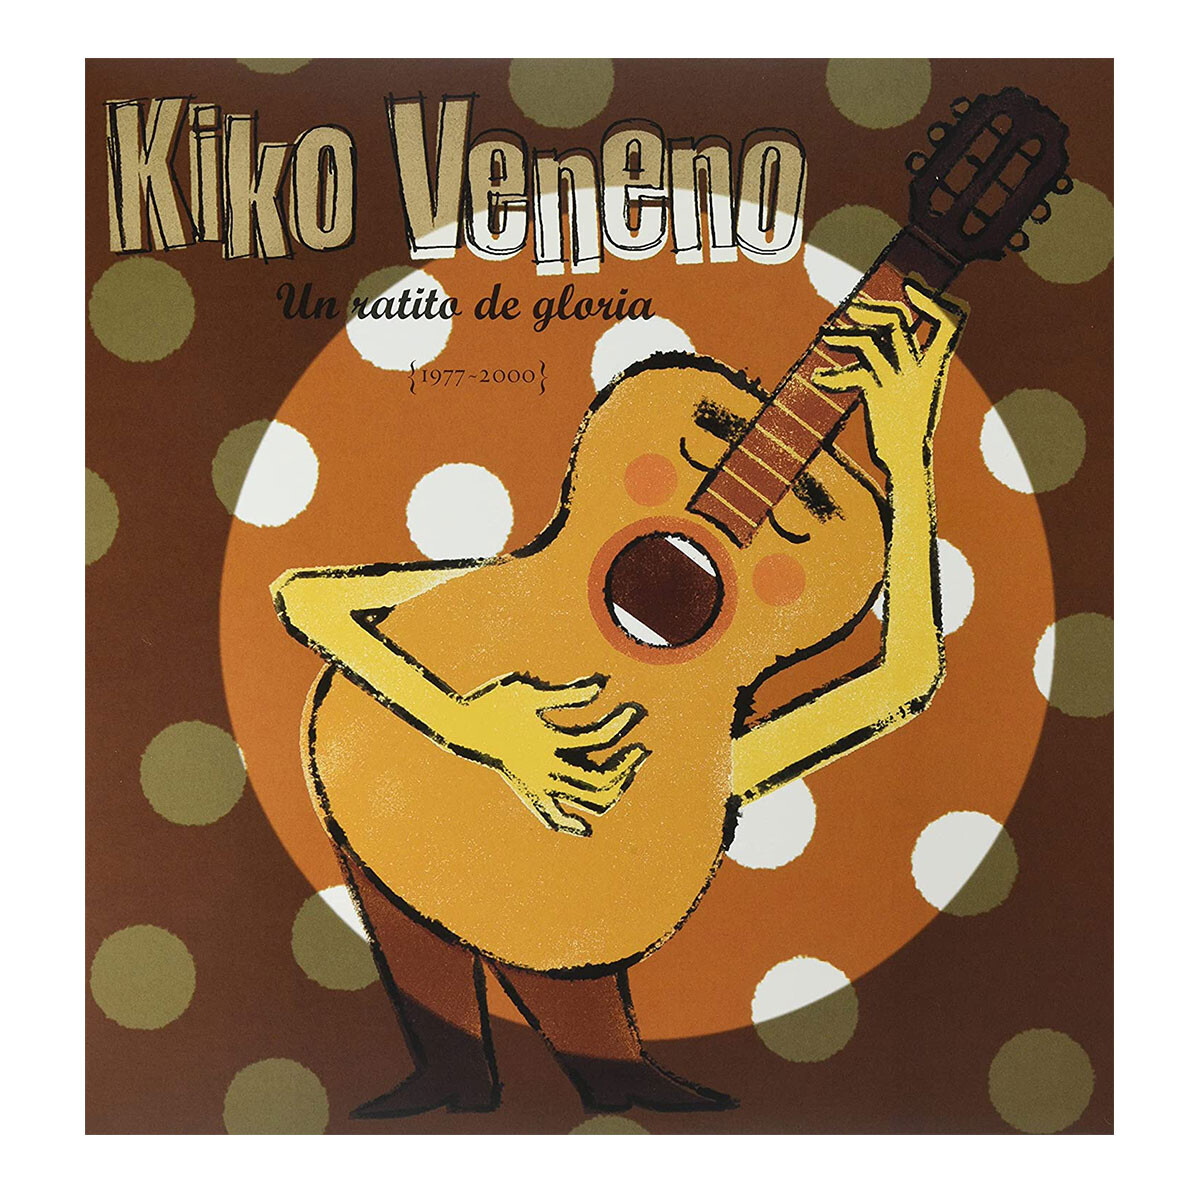 Kiko Veneno Un Ratito De Gloria (1977-2000). Vinilo 